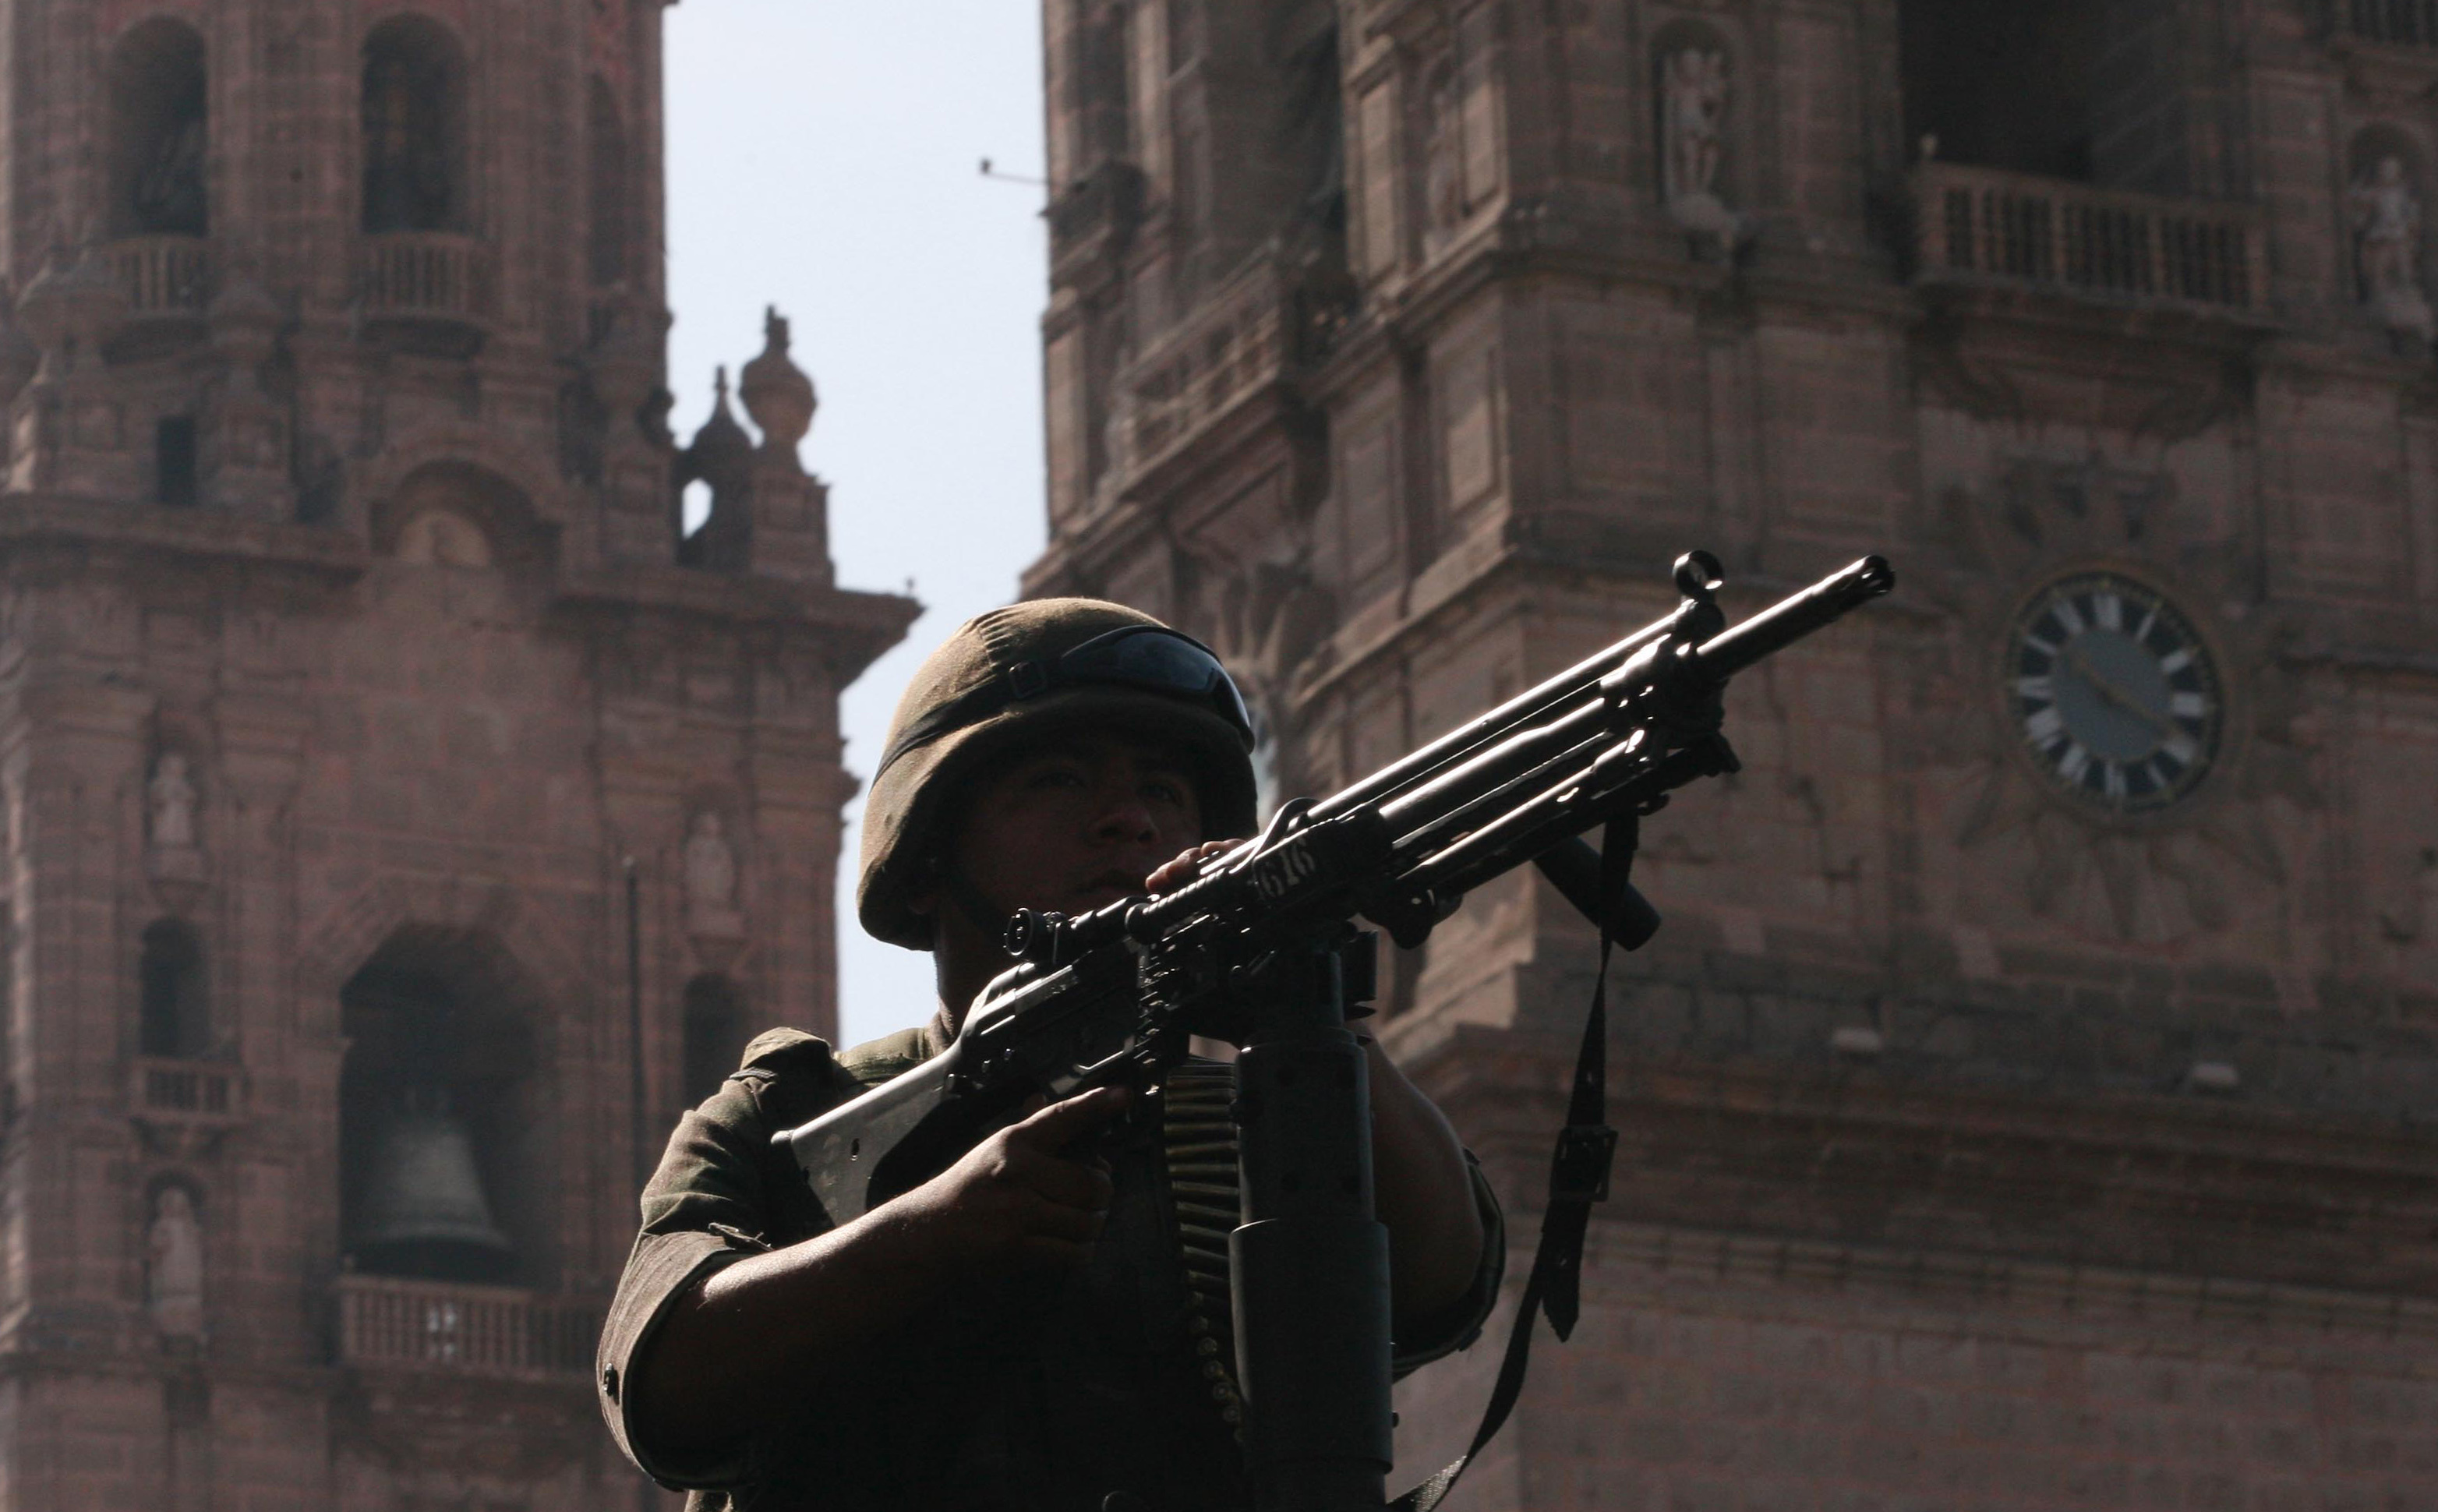 “Καραβάνι κατά της βίας” στο Μεξικό